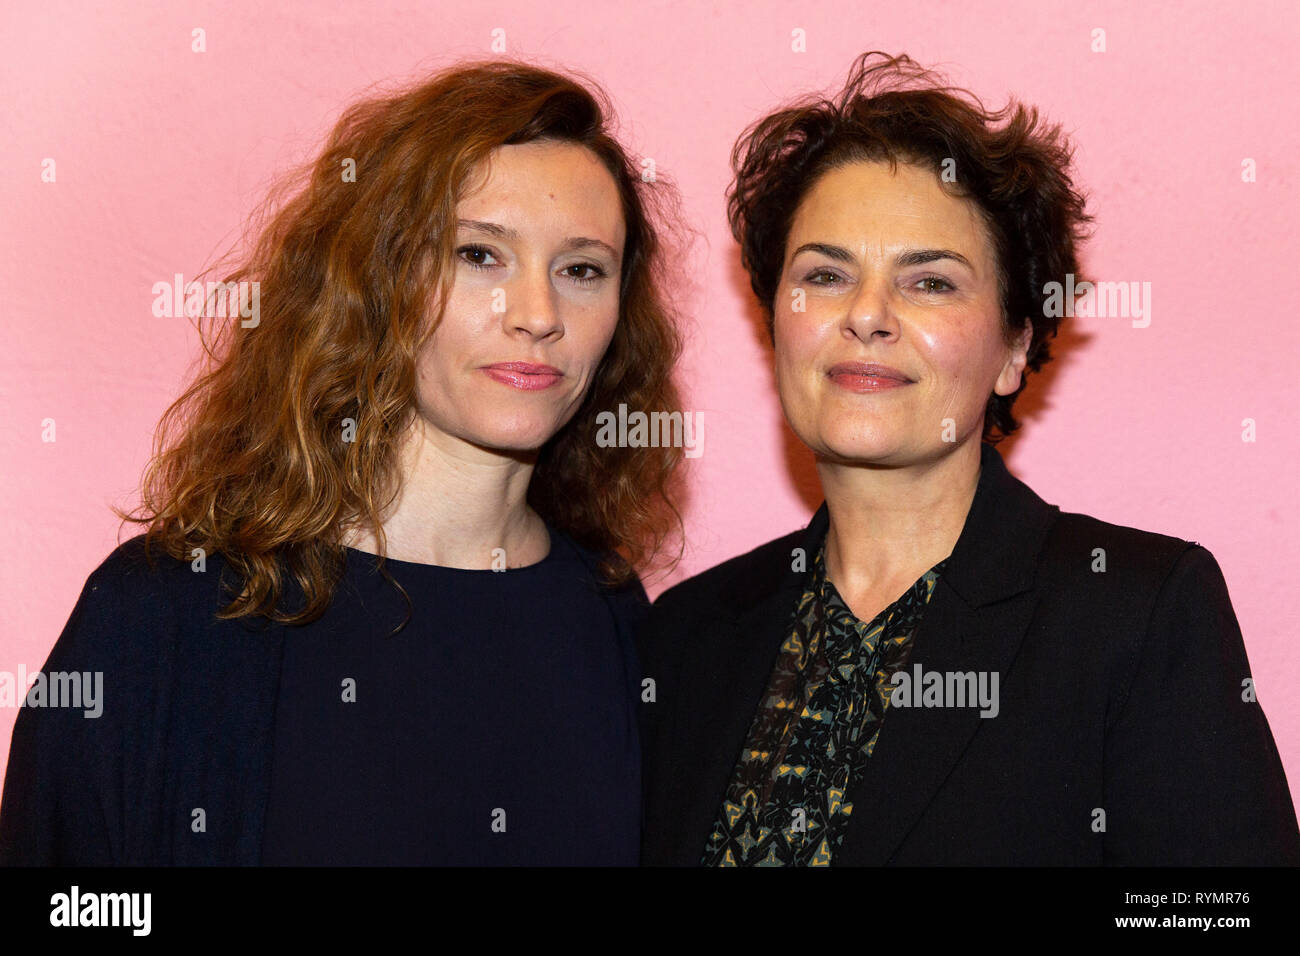 Christine Repond und Barbara Auer bei der Premiere Film Vakuum, Schauspiel Köln, Köln, 13.03.2019 Foto Stock